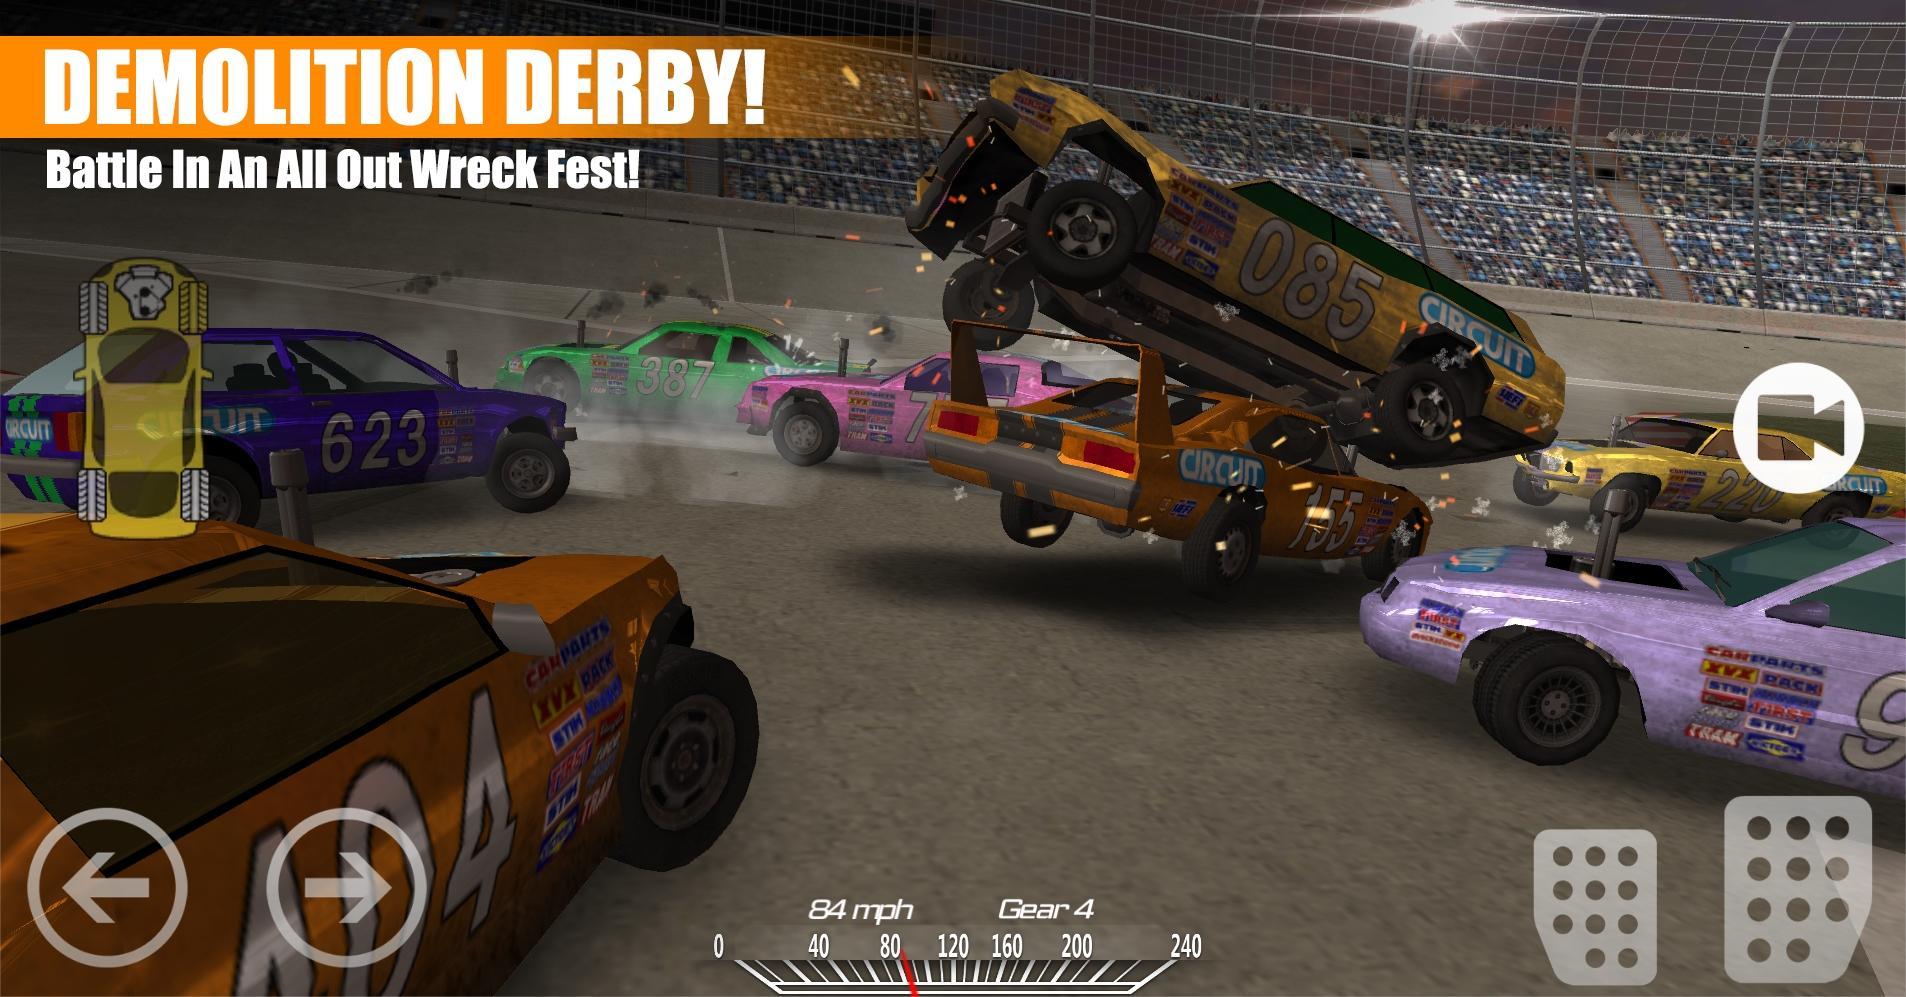 Screenshot 1 of Derby de demolición 2 1.7.12